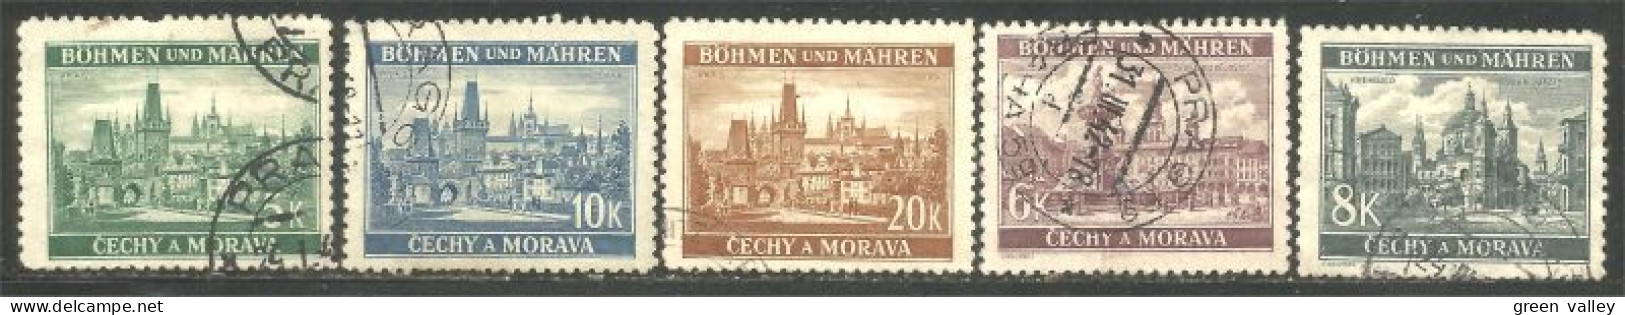 290 Bohmen Mahren Monuments 1939-40 (CZE-403) - Gebraucht